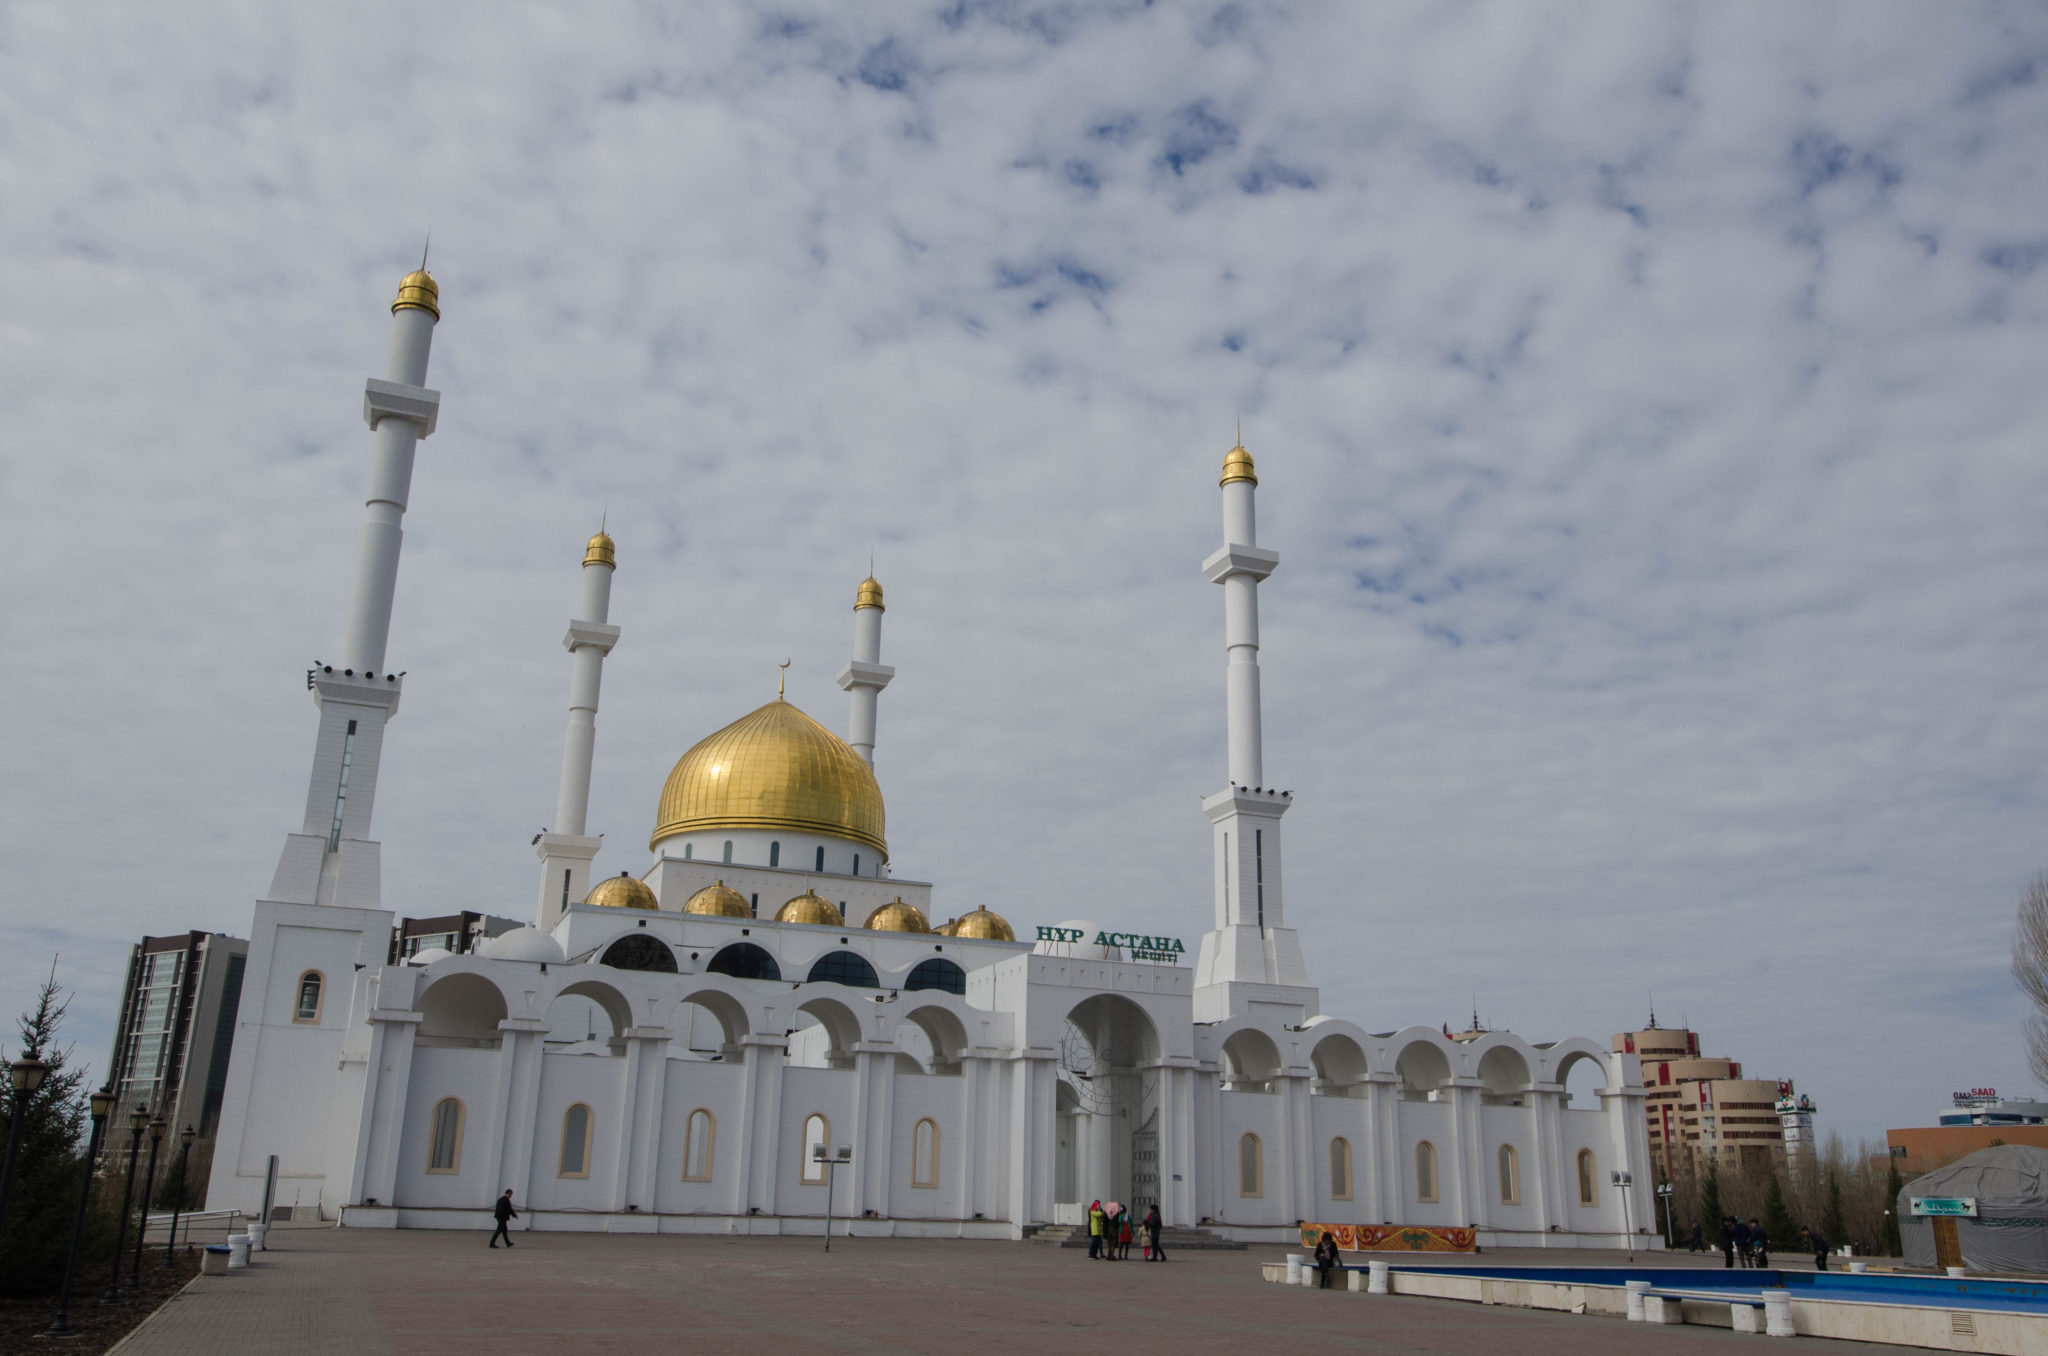 Moscheen mit goldenen Kuppeln kennt man auch aus anderen Ländern